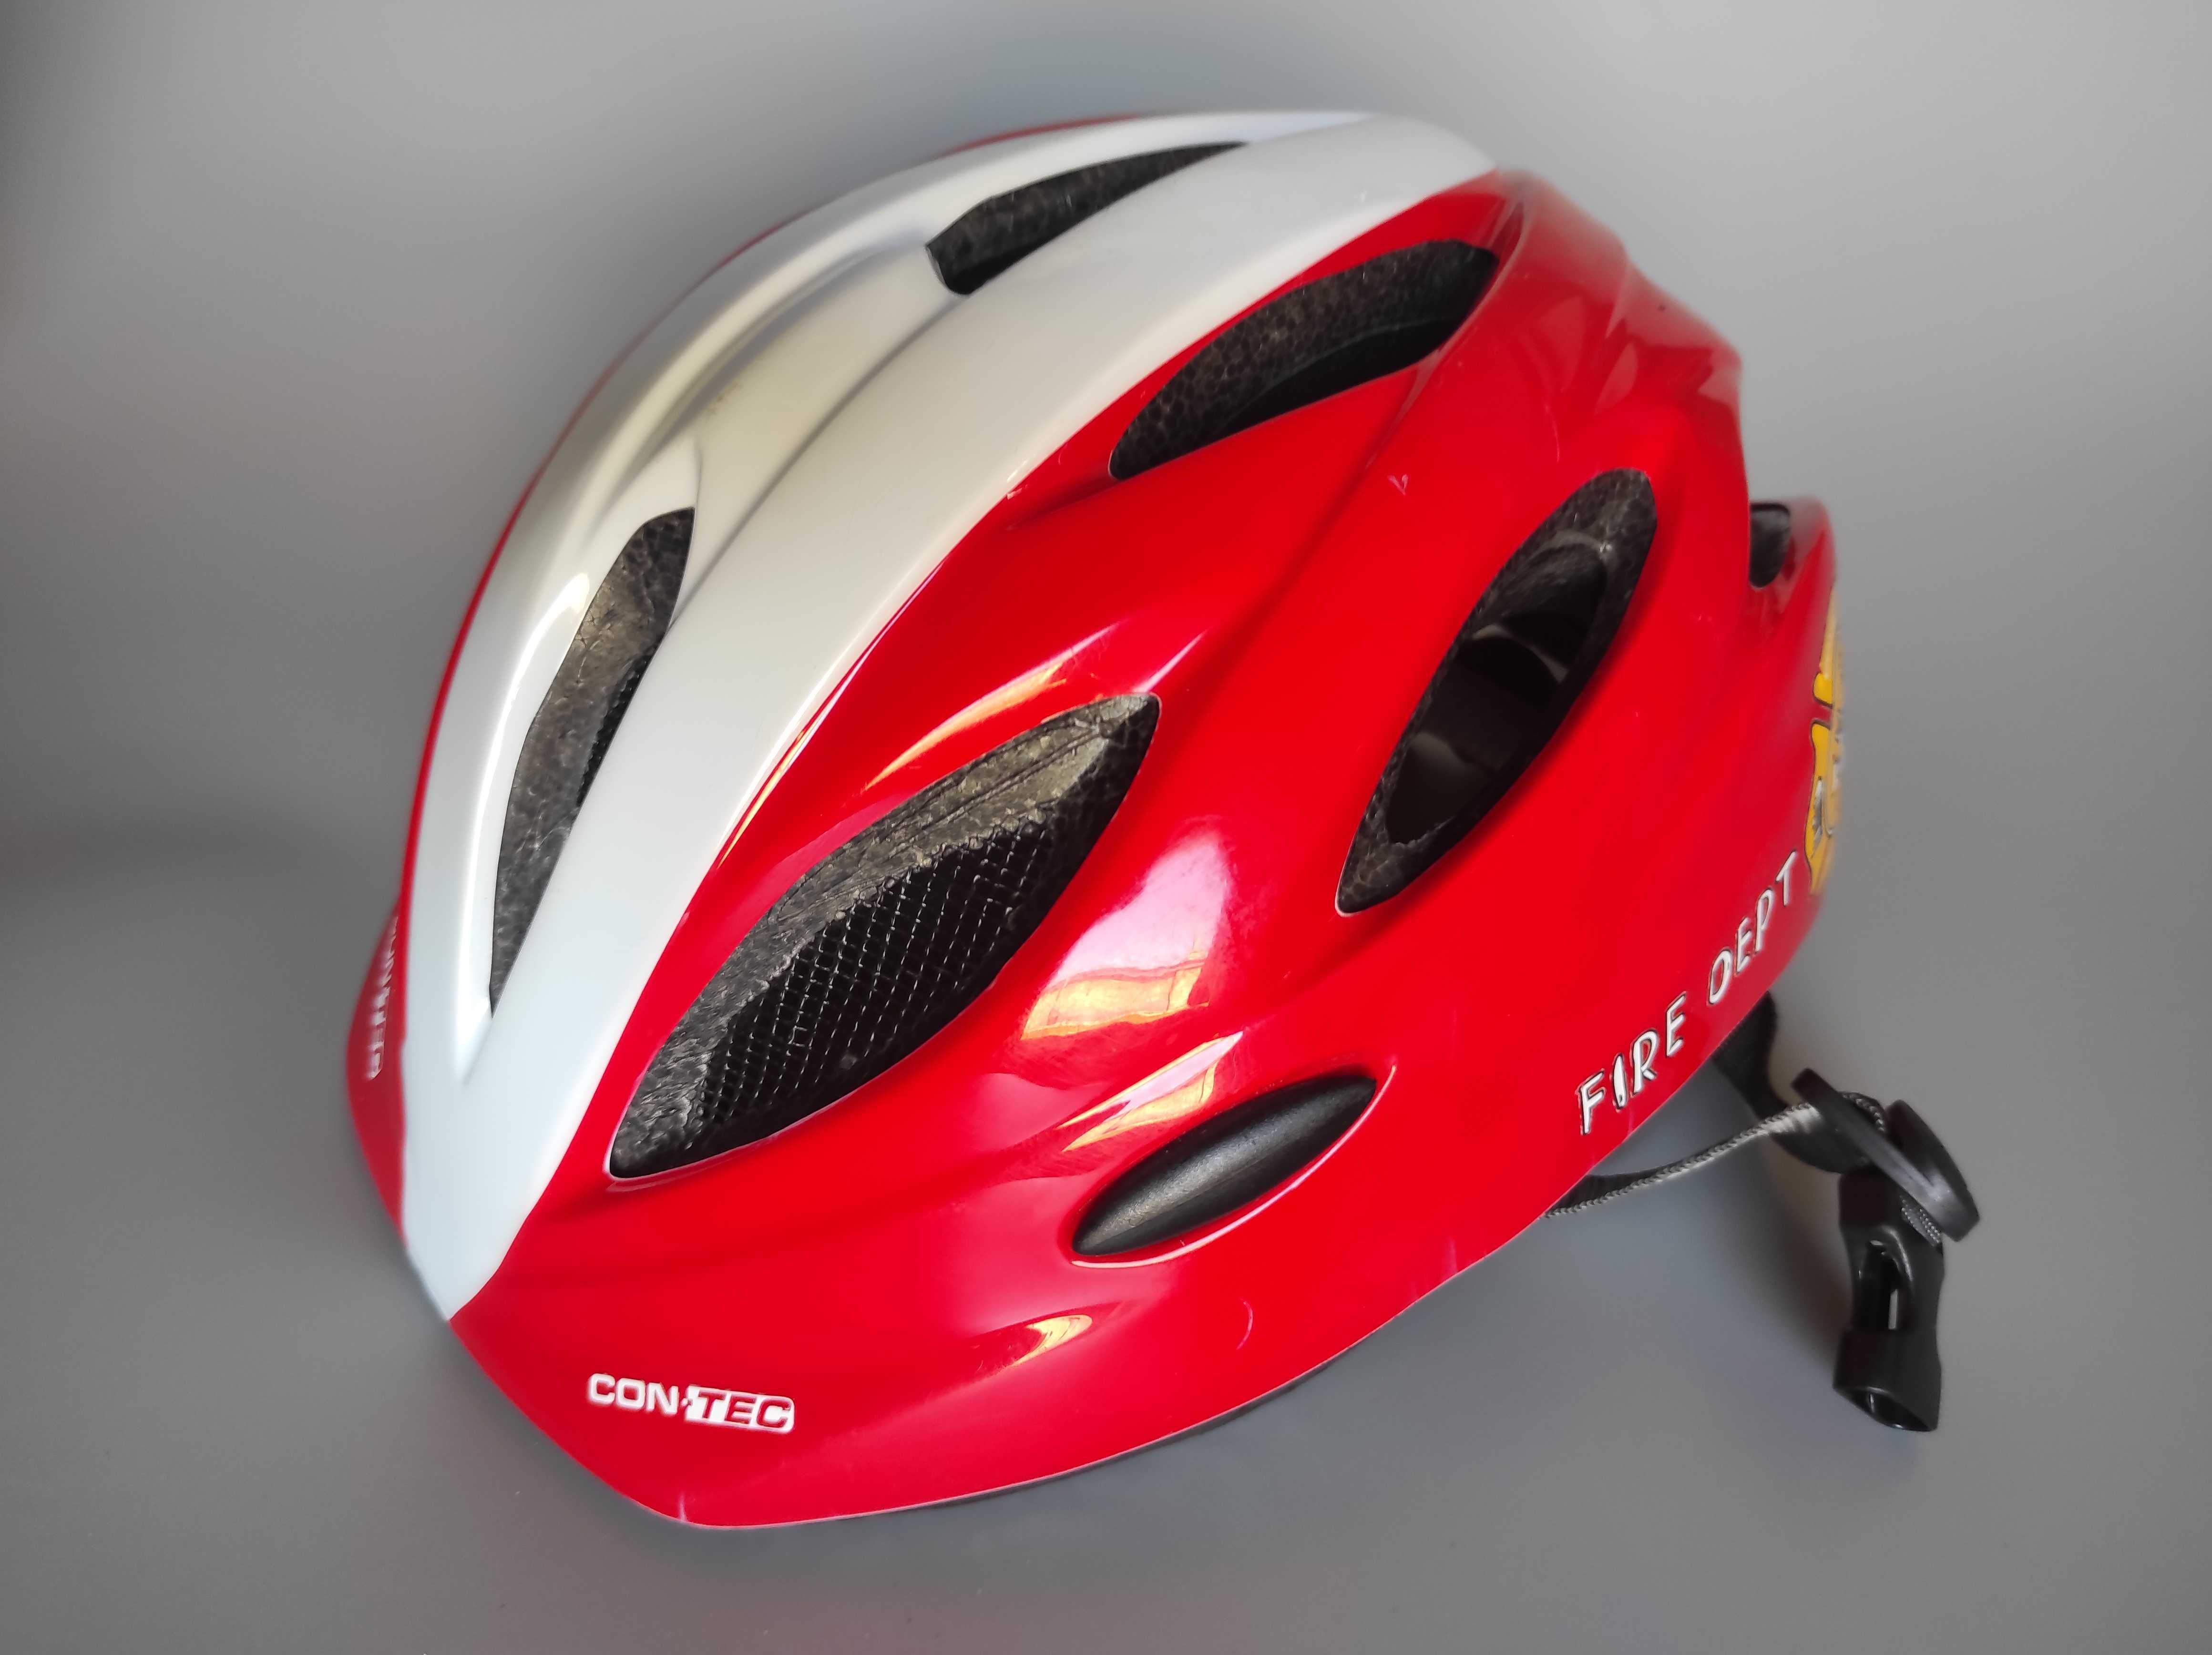 Детский защитный шлем Con-Tec, размер 52-56см, велосипедный.